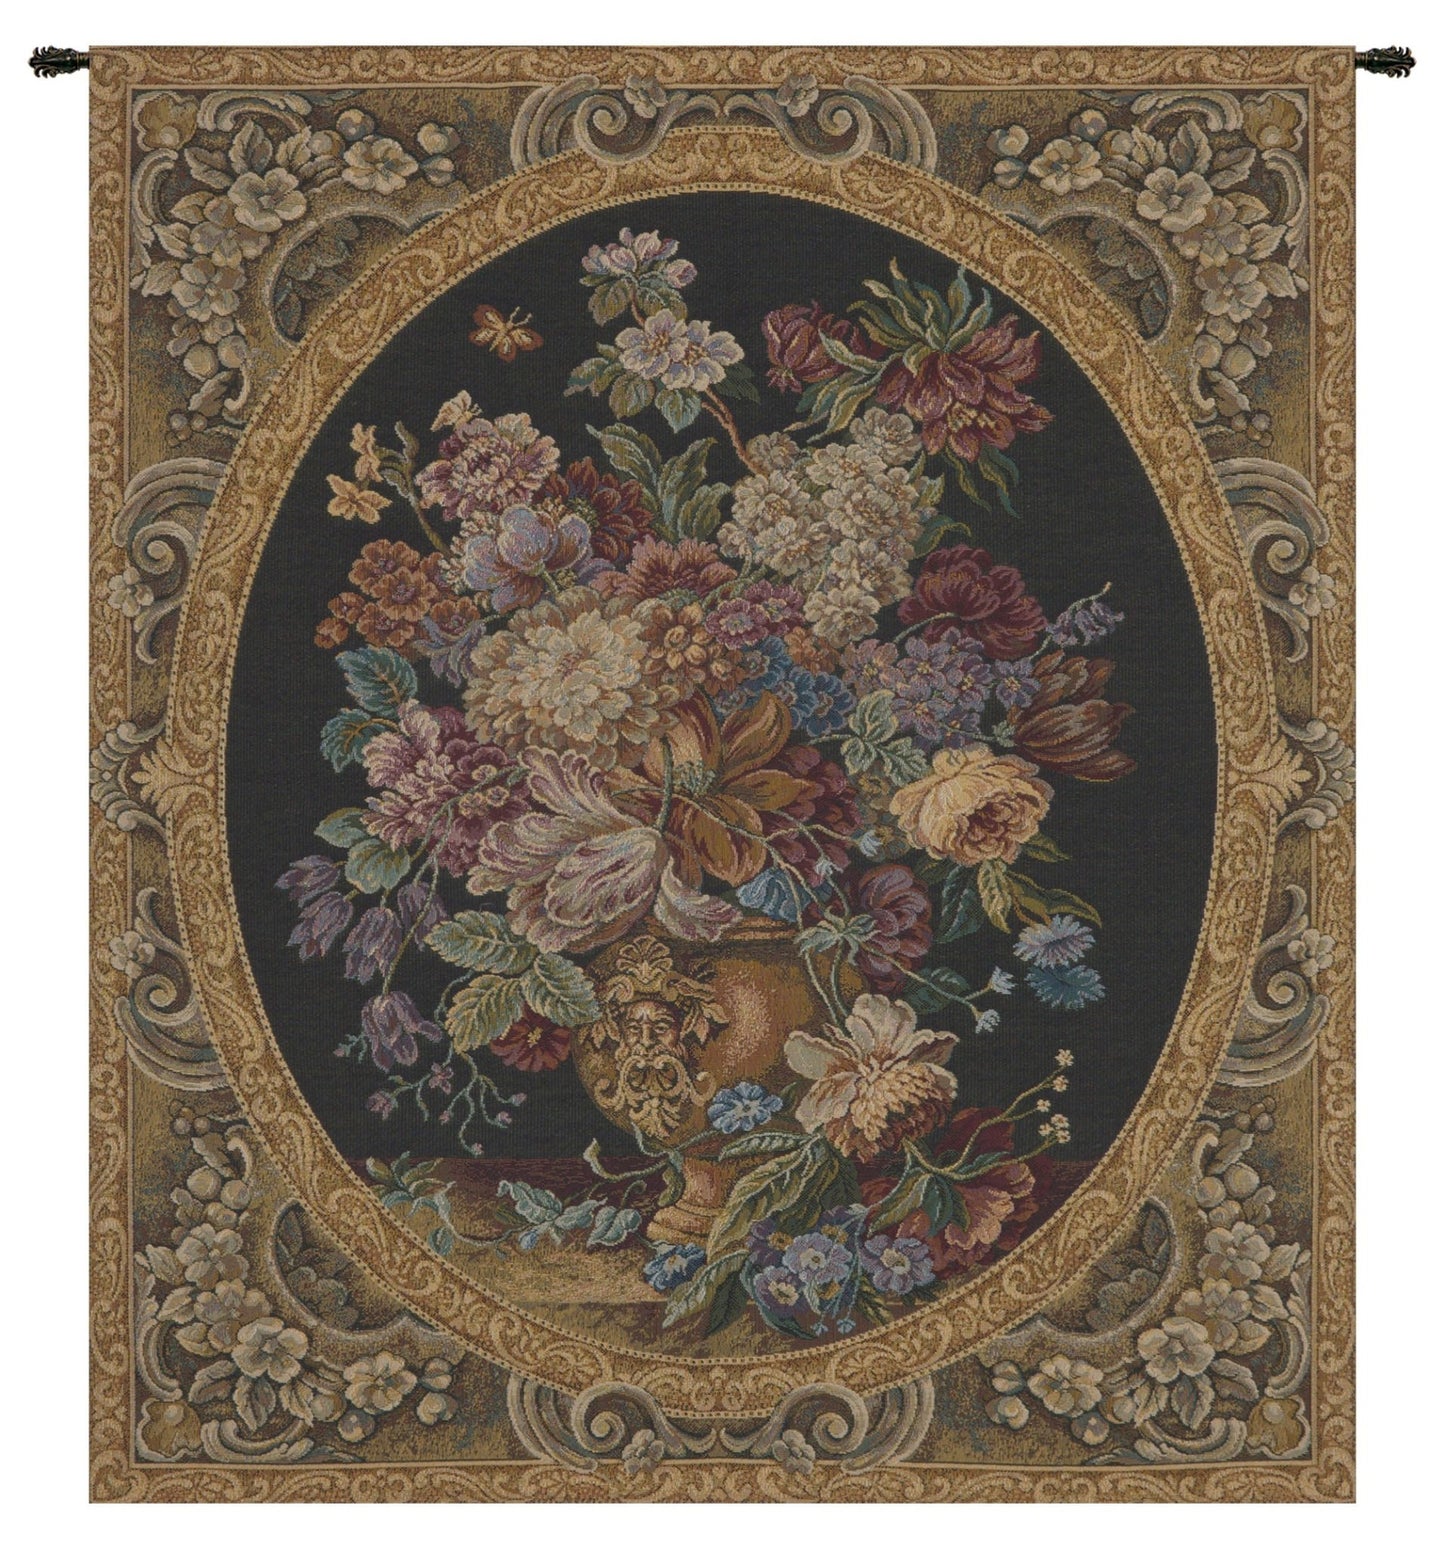 Floral Composition in Vase Dark Green Italian Tapestry - RoseStraya.com